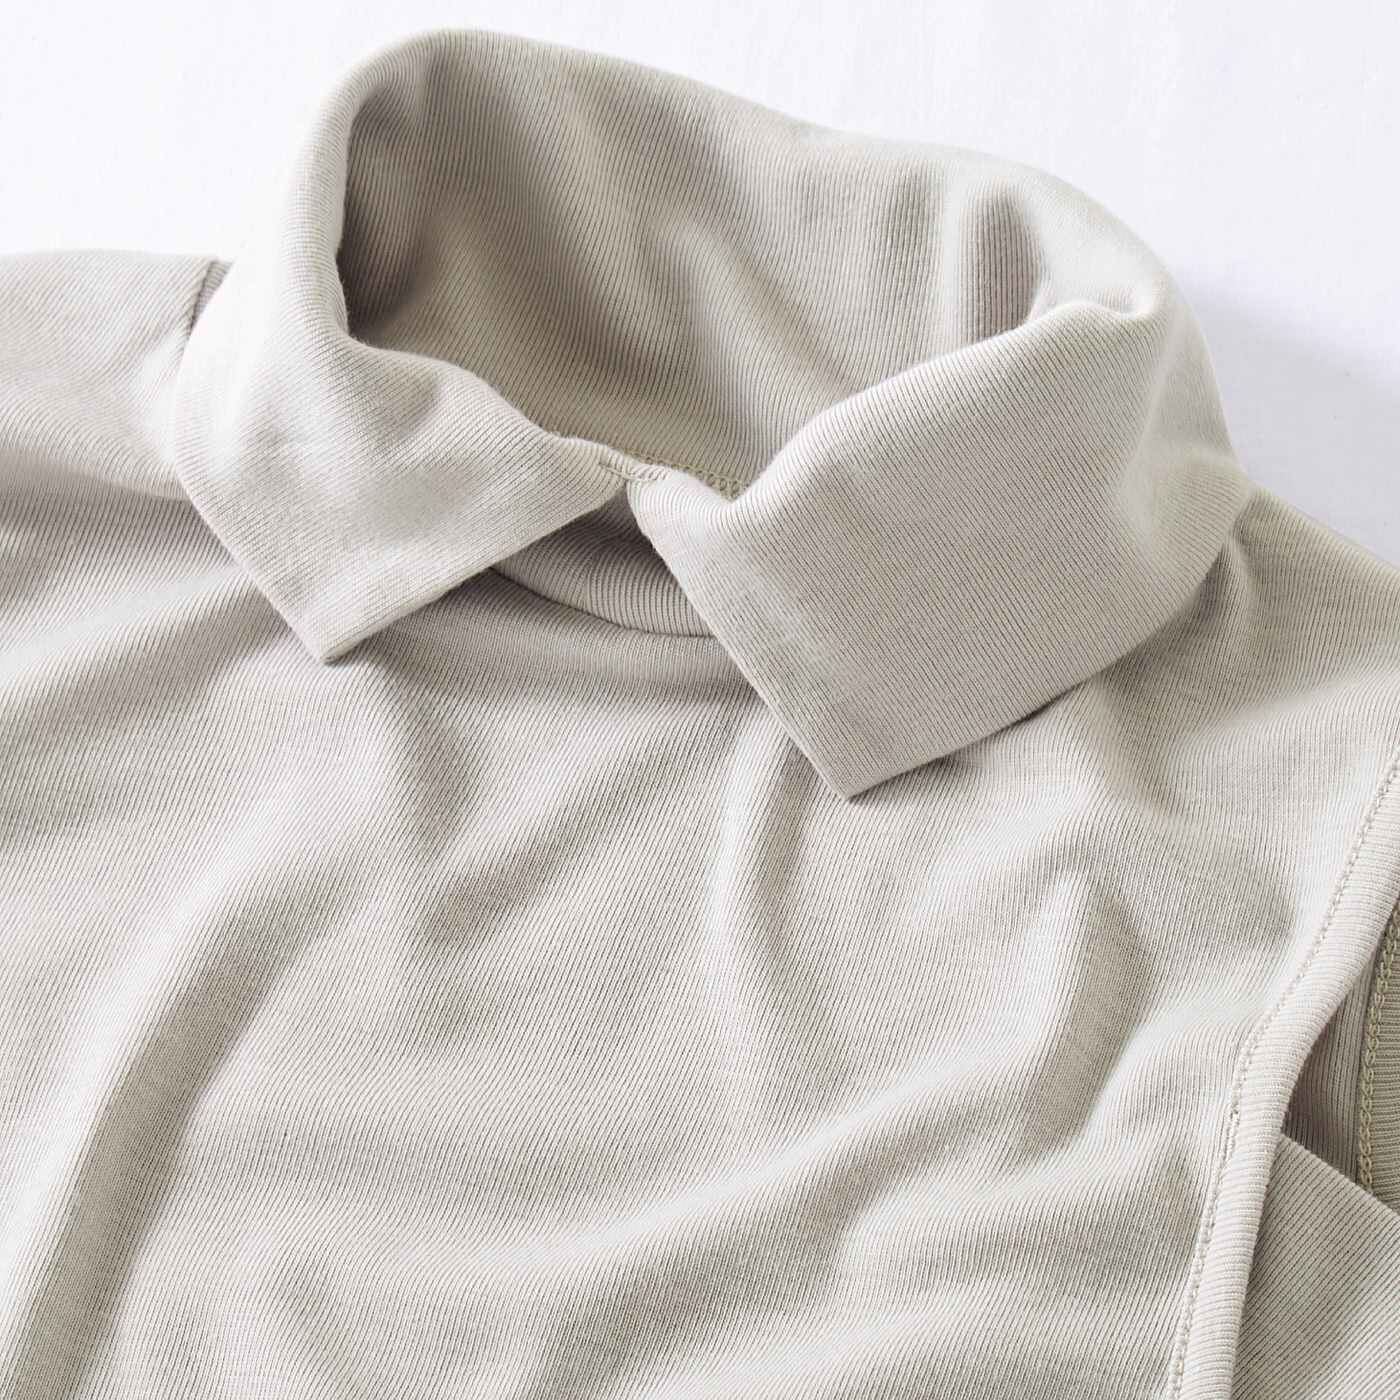 Real Stock|シャツ見えできちんと印象にチェンジ　衿付きタンクトップ〈ブラック〉|伸縮性のあるカットソー素材で着心地も快適です。　※お届けするカラーとは異なります。